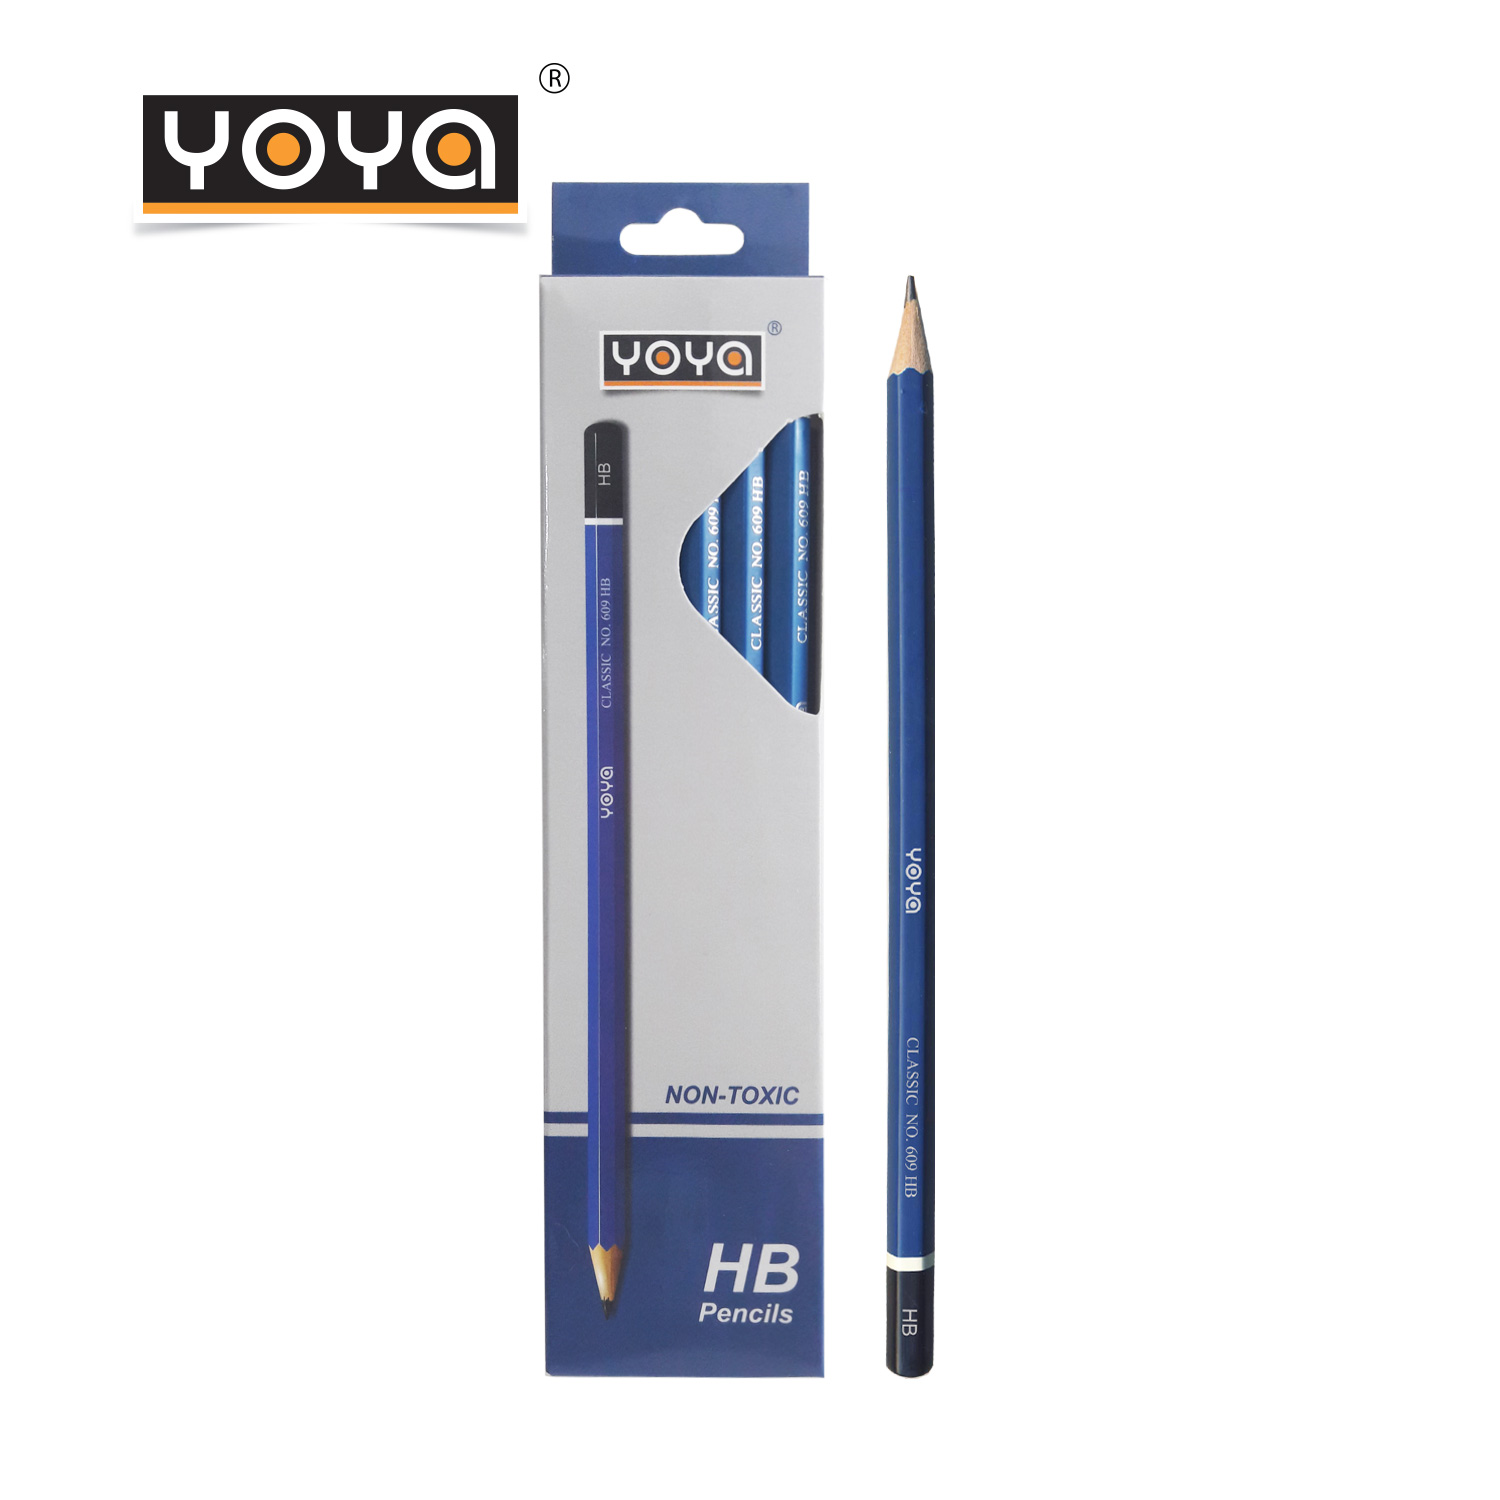 YOYA ดินสอไม้-HB แพ็ค 12 รุ่น 609-HB